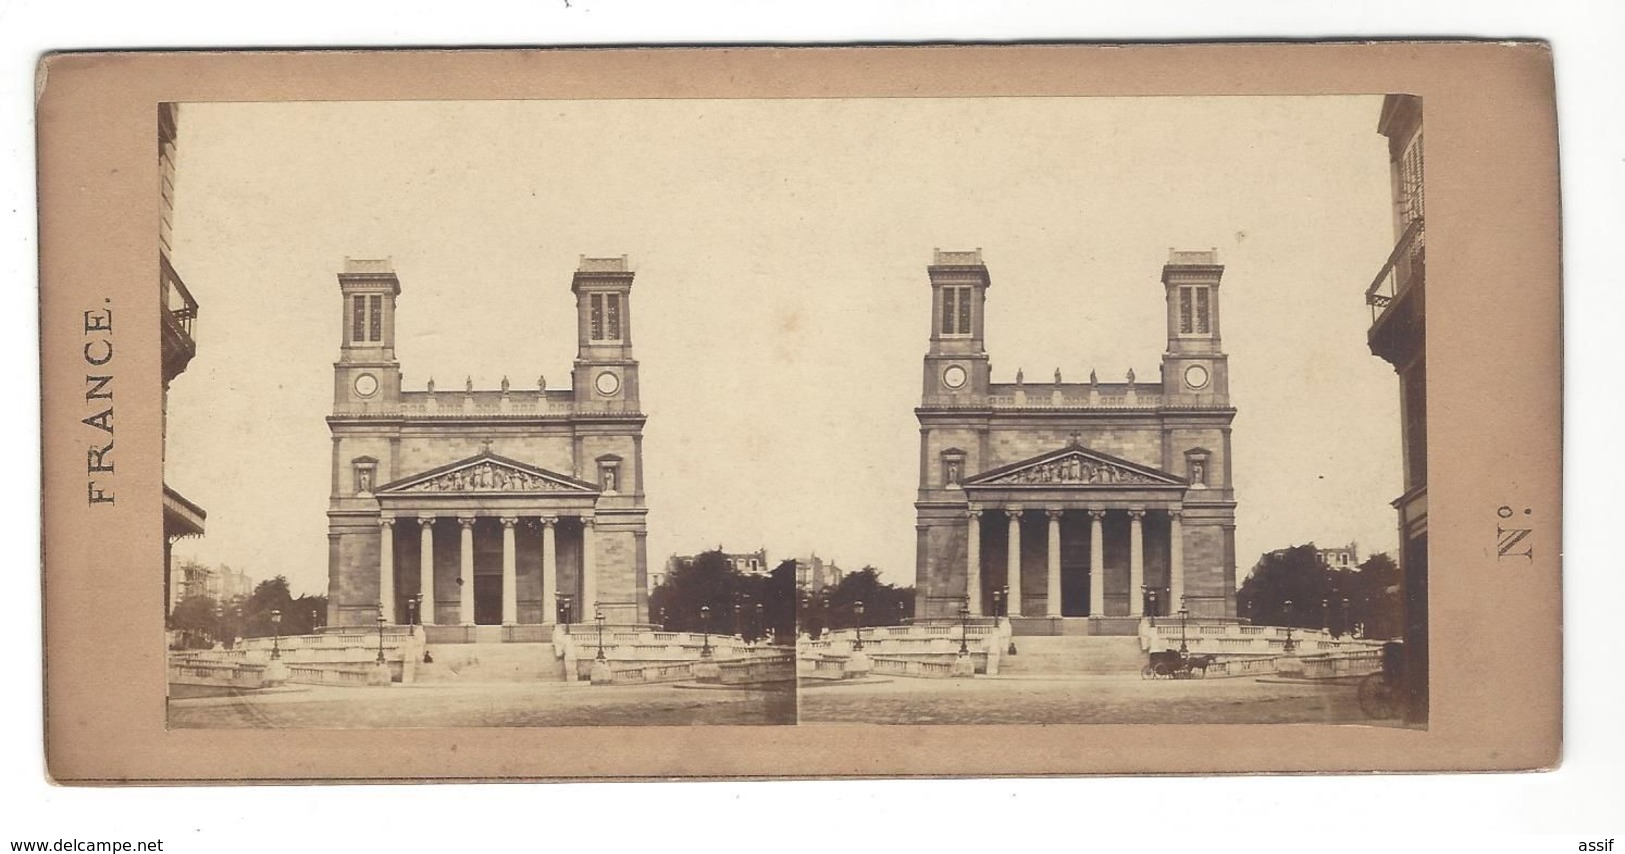 PARIS EGLISE ST VINCENT DE PAUL  PHOTO STEREO CIRCA 1860 /FREE SHIPPING R - Photos Stéréoscopiques